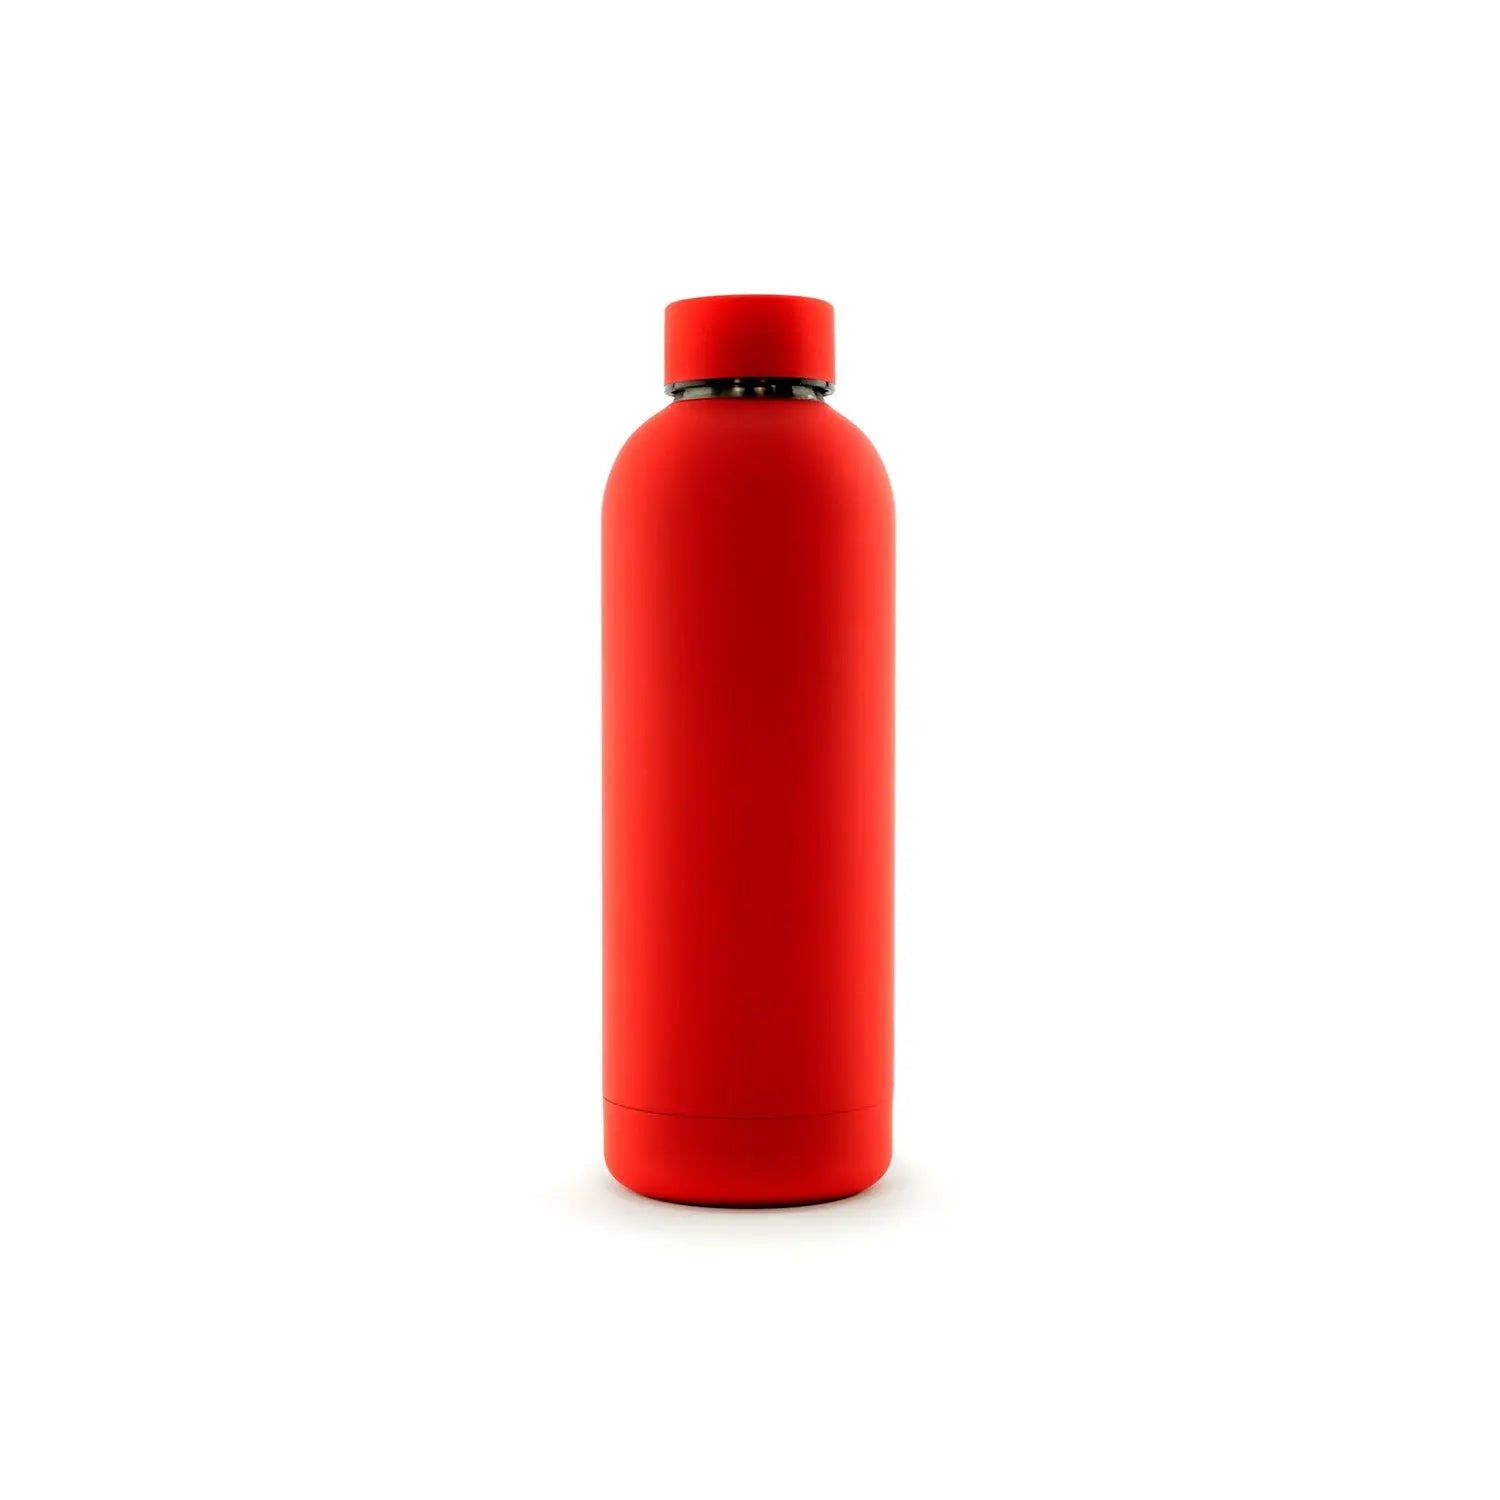 Classiq Rosso bottle - 500 ml - BeLoco